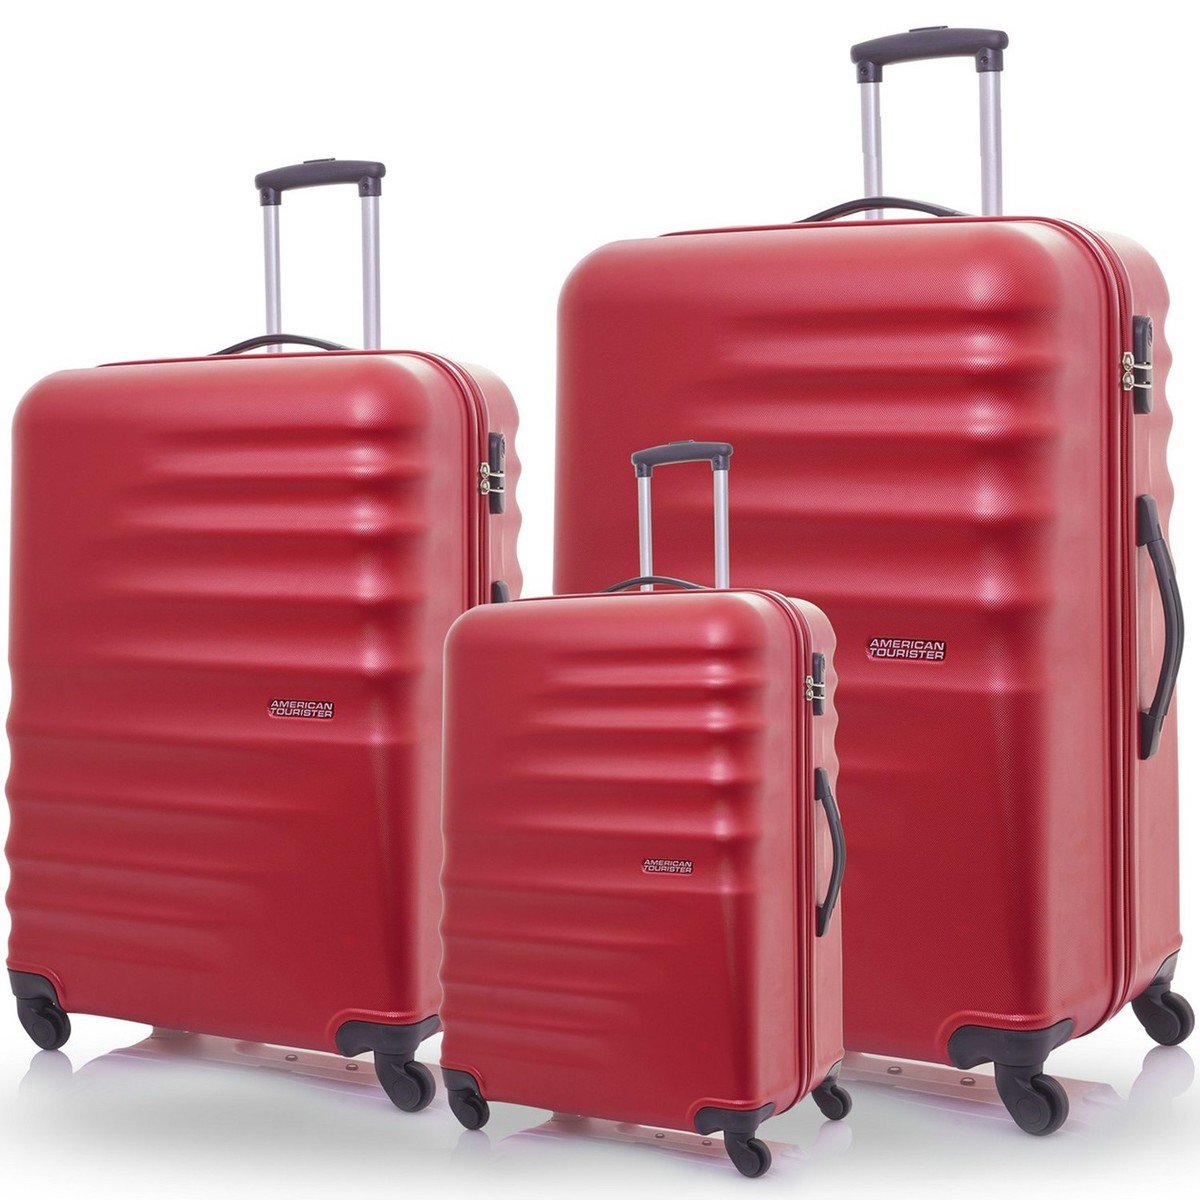 LuLu Hypermarket Luggage offers in Qatar - Doha